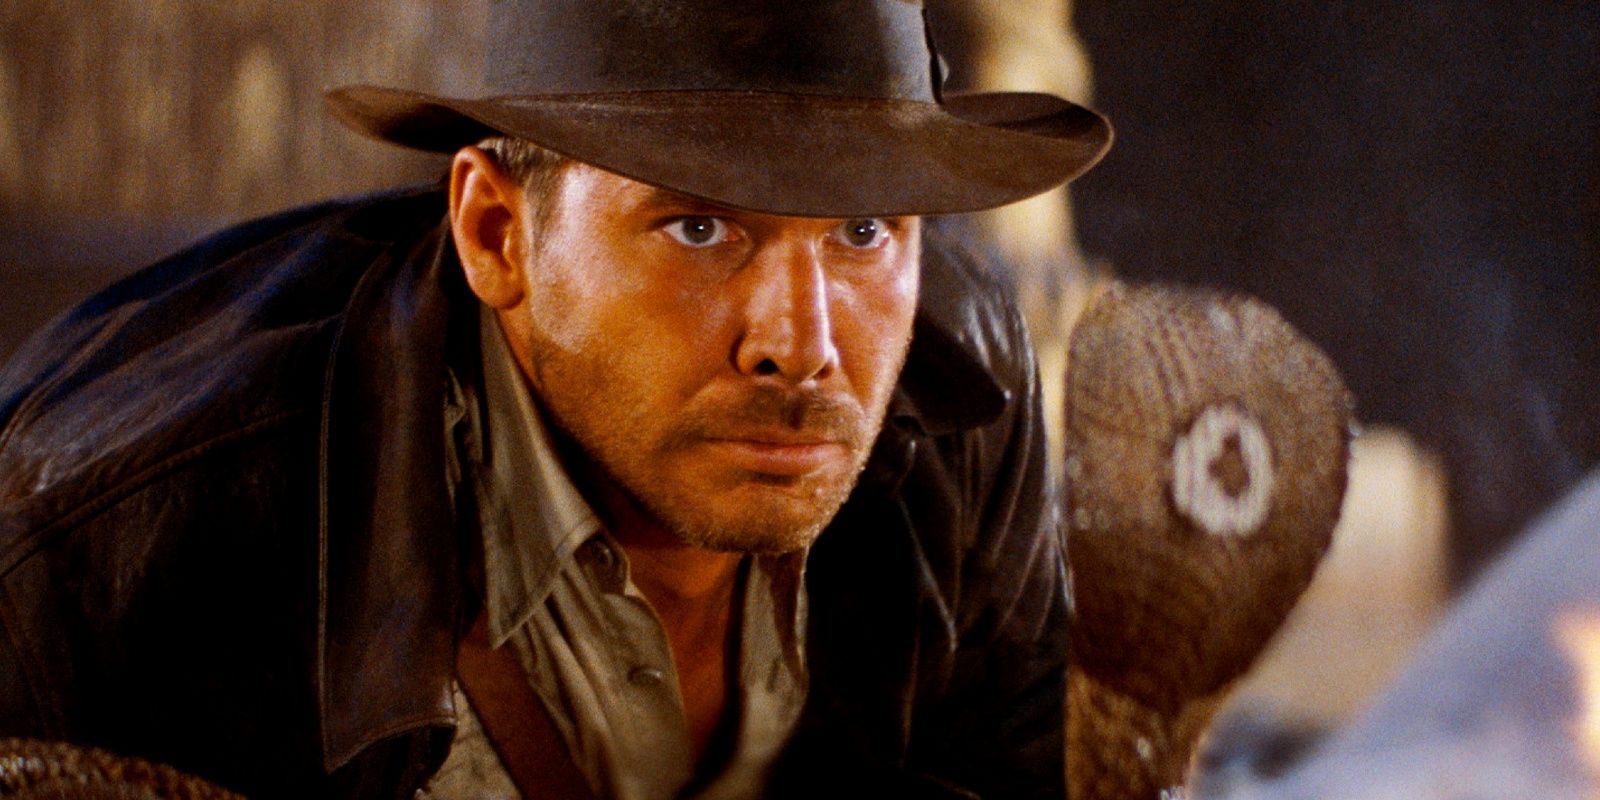 La infame escena de la serpiente de Indiana Jones pierde “puntos” de precisión en la evaluación de un experto